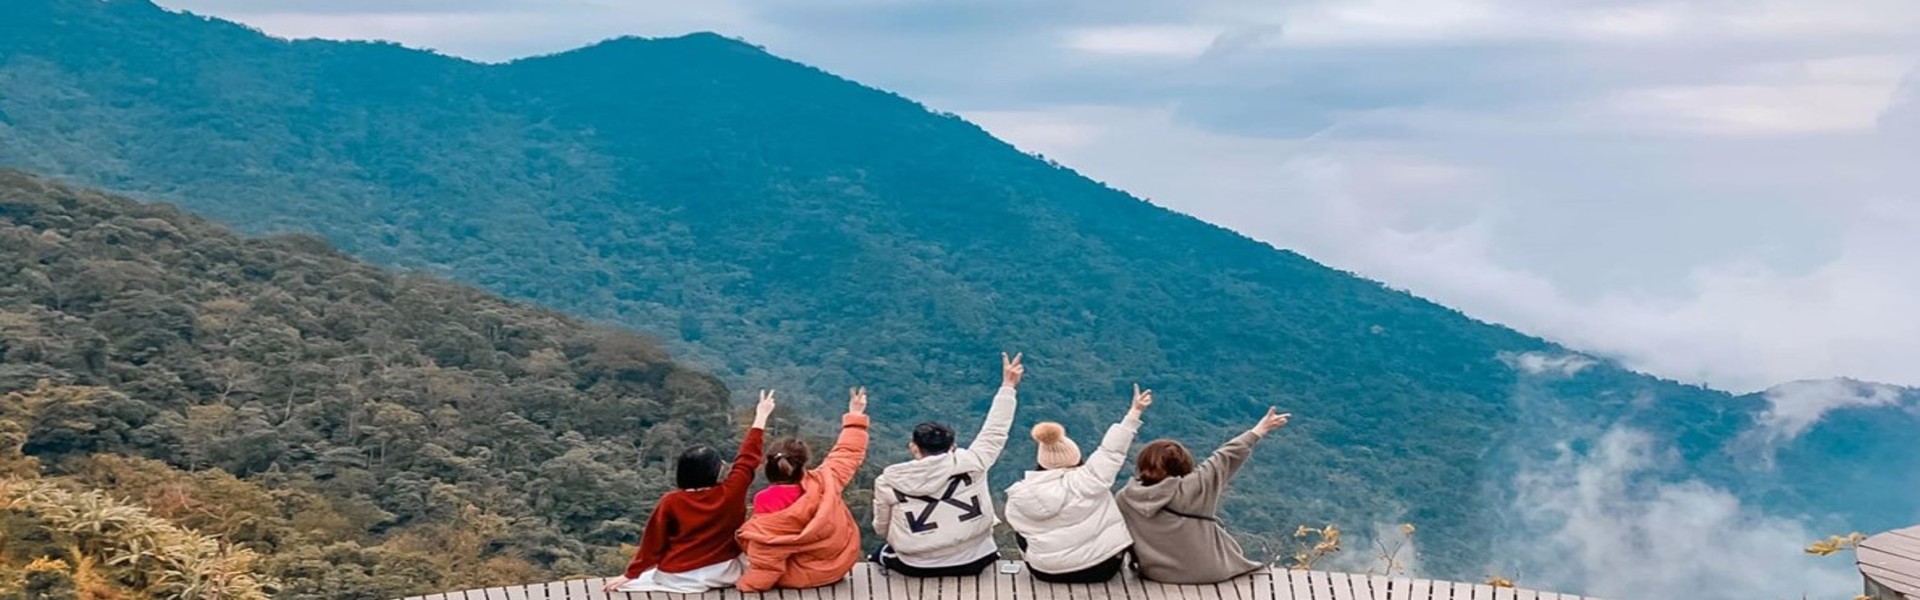 Kinh nghiệm du lịch Tam Đảo tự túc chi tiết nhất từ Ví MoMo